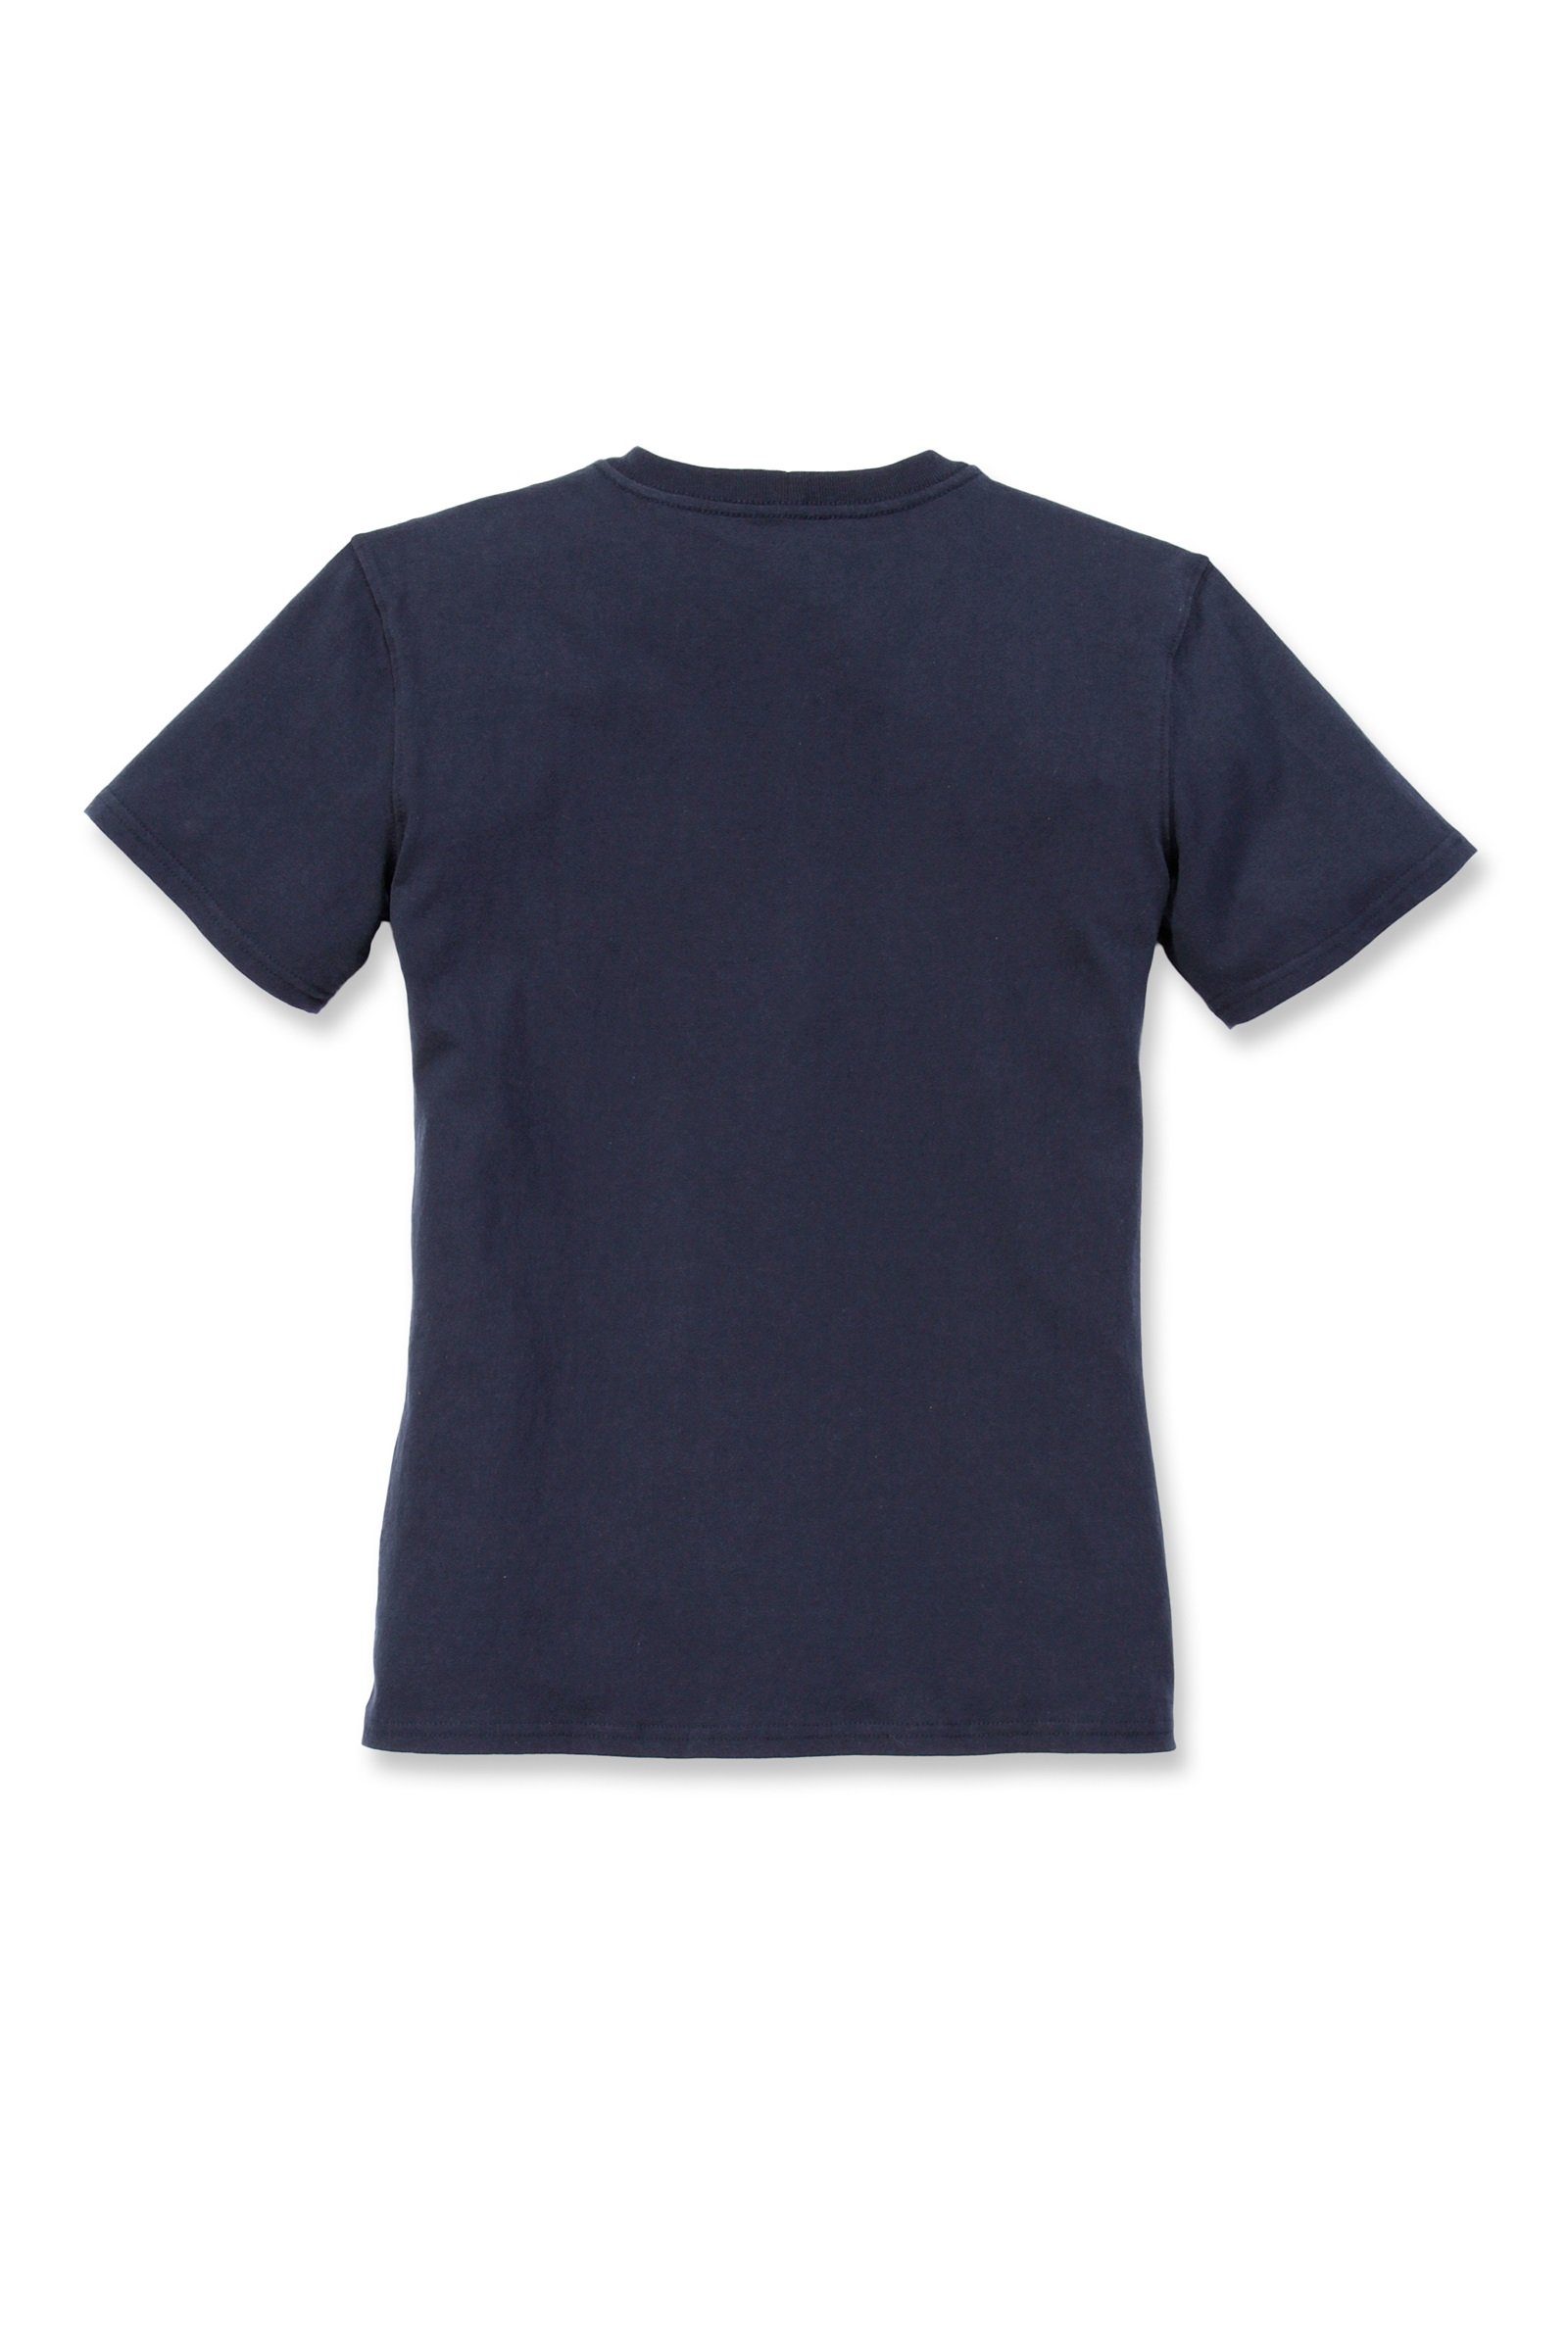 Carhartt T-Shirt Carhartt Loose Pocket Fit Short-Sleeve Heavyweight Damen Adult T-Shirt navy